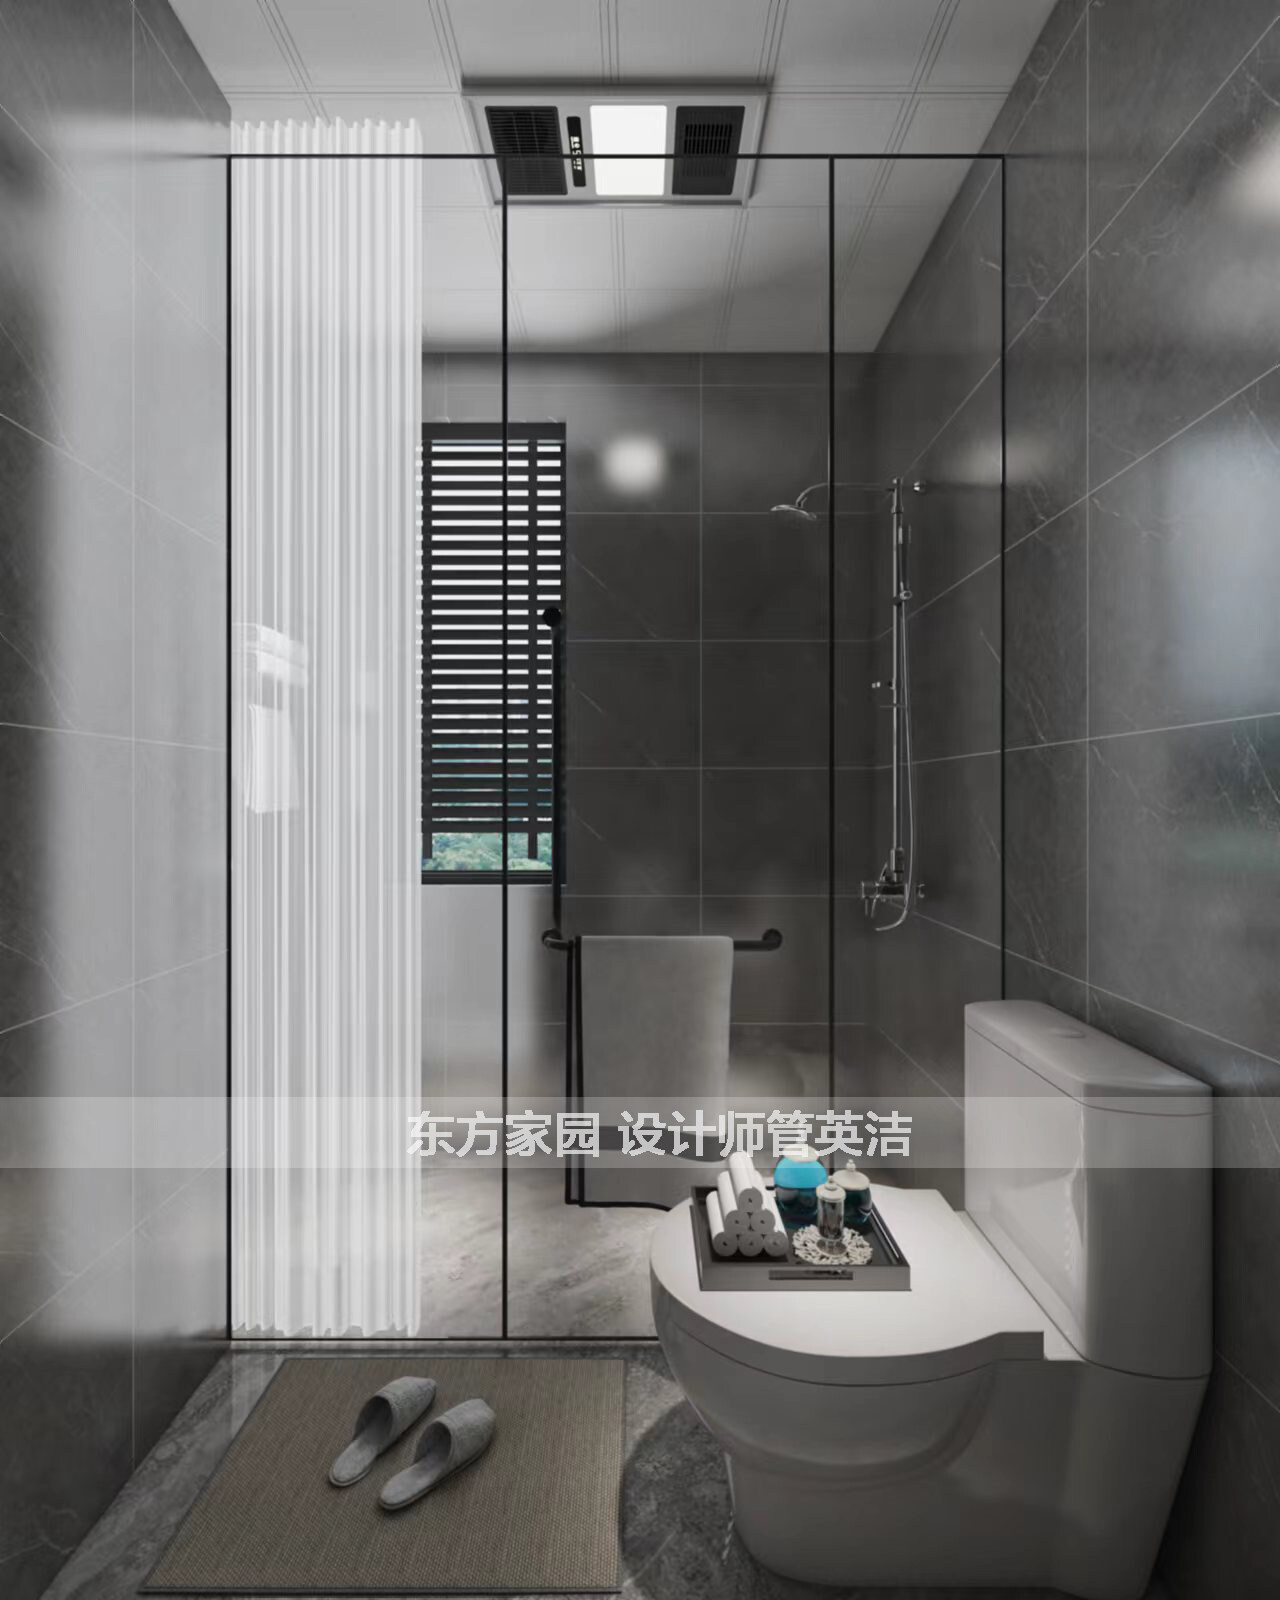 鲁商蓝岸国际127㎡三室二厅卫生间现代简约风格户型研发案例效果图-详细.jpg